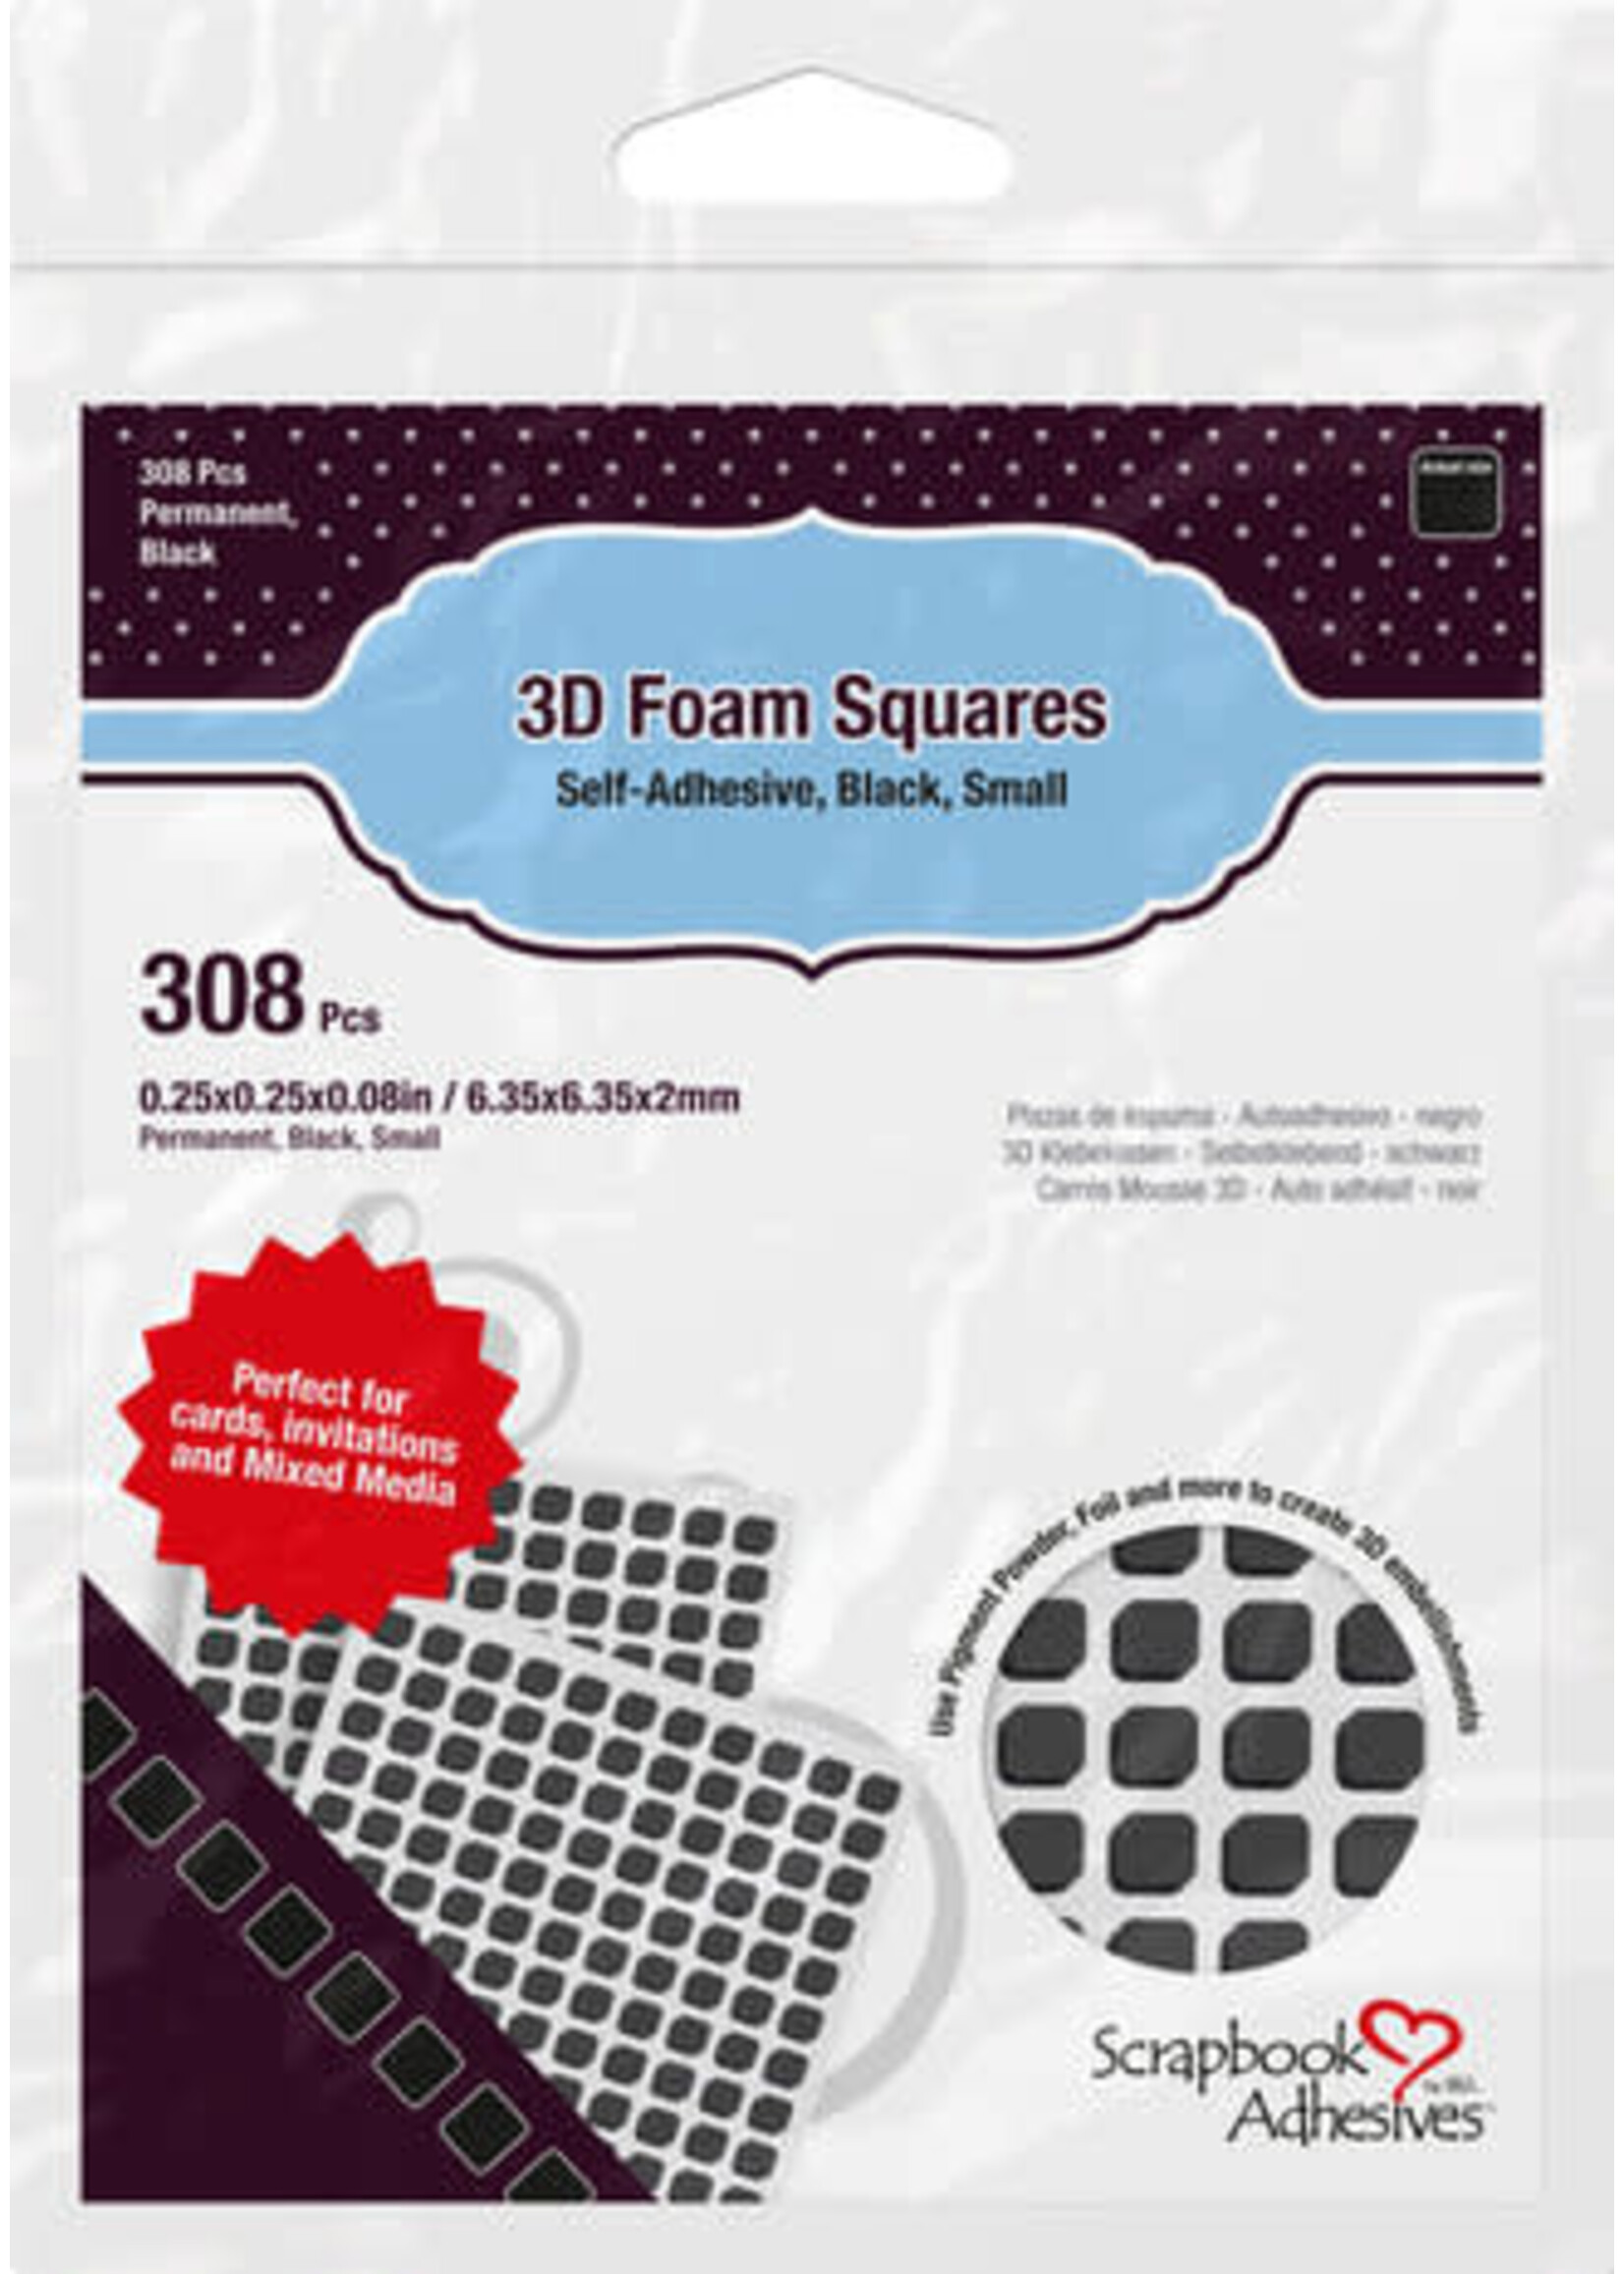 Scrapbook Adhesives 3D Foam Squares Black Small (308pcs) (01613)